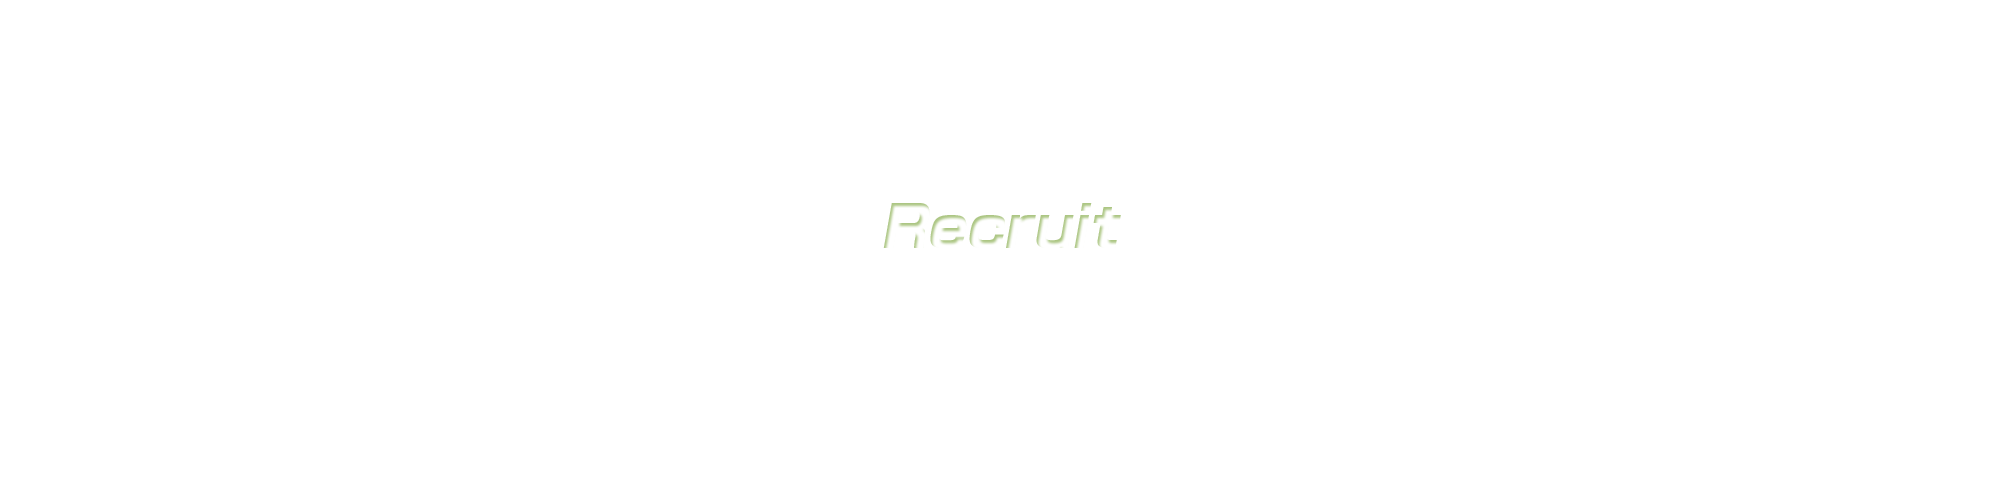 banner_recruit_on